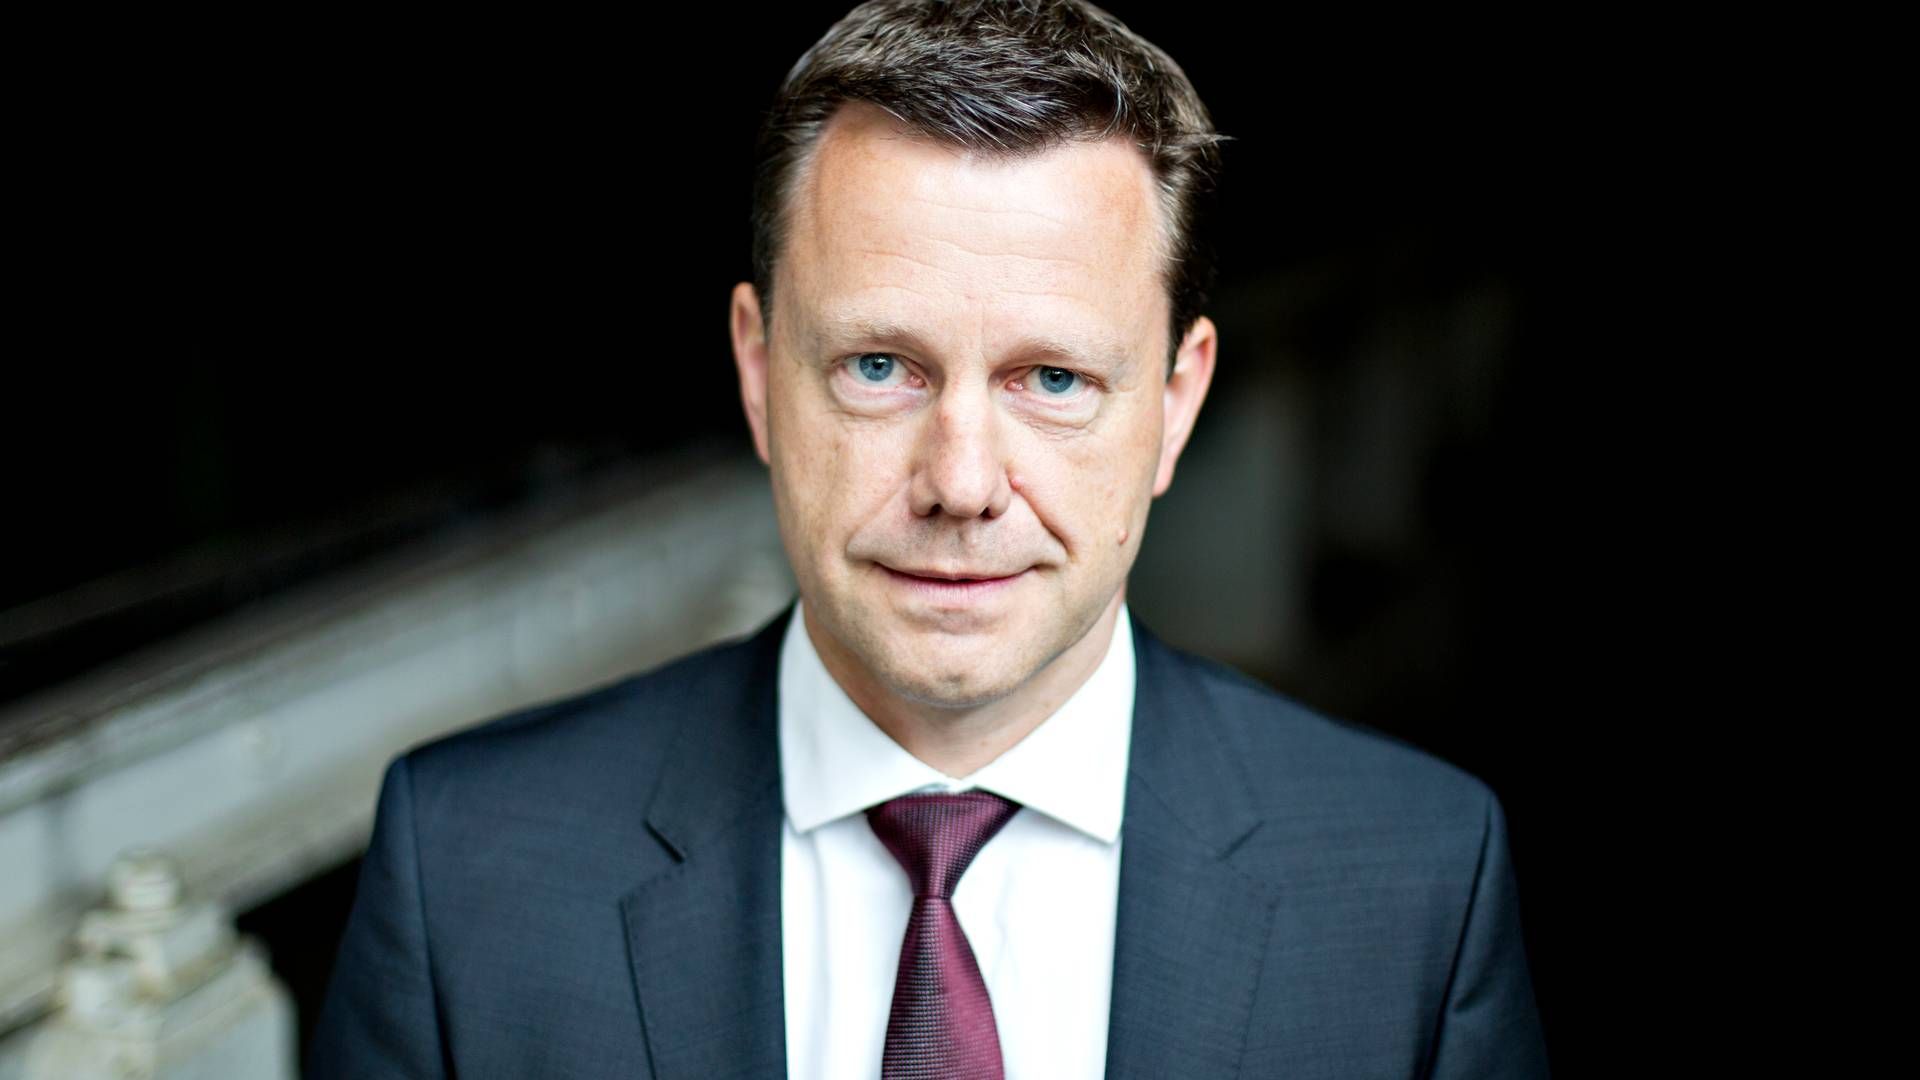 Kristian Hundebøll startede karrieren i DLG som direktionsassistent, men slutter nu efter 12 år som adm. direktør. | Foto: Stine Bidstrup